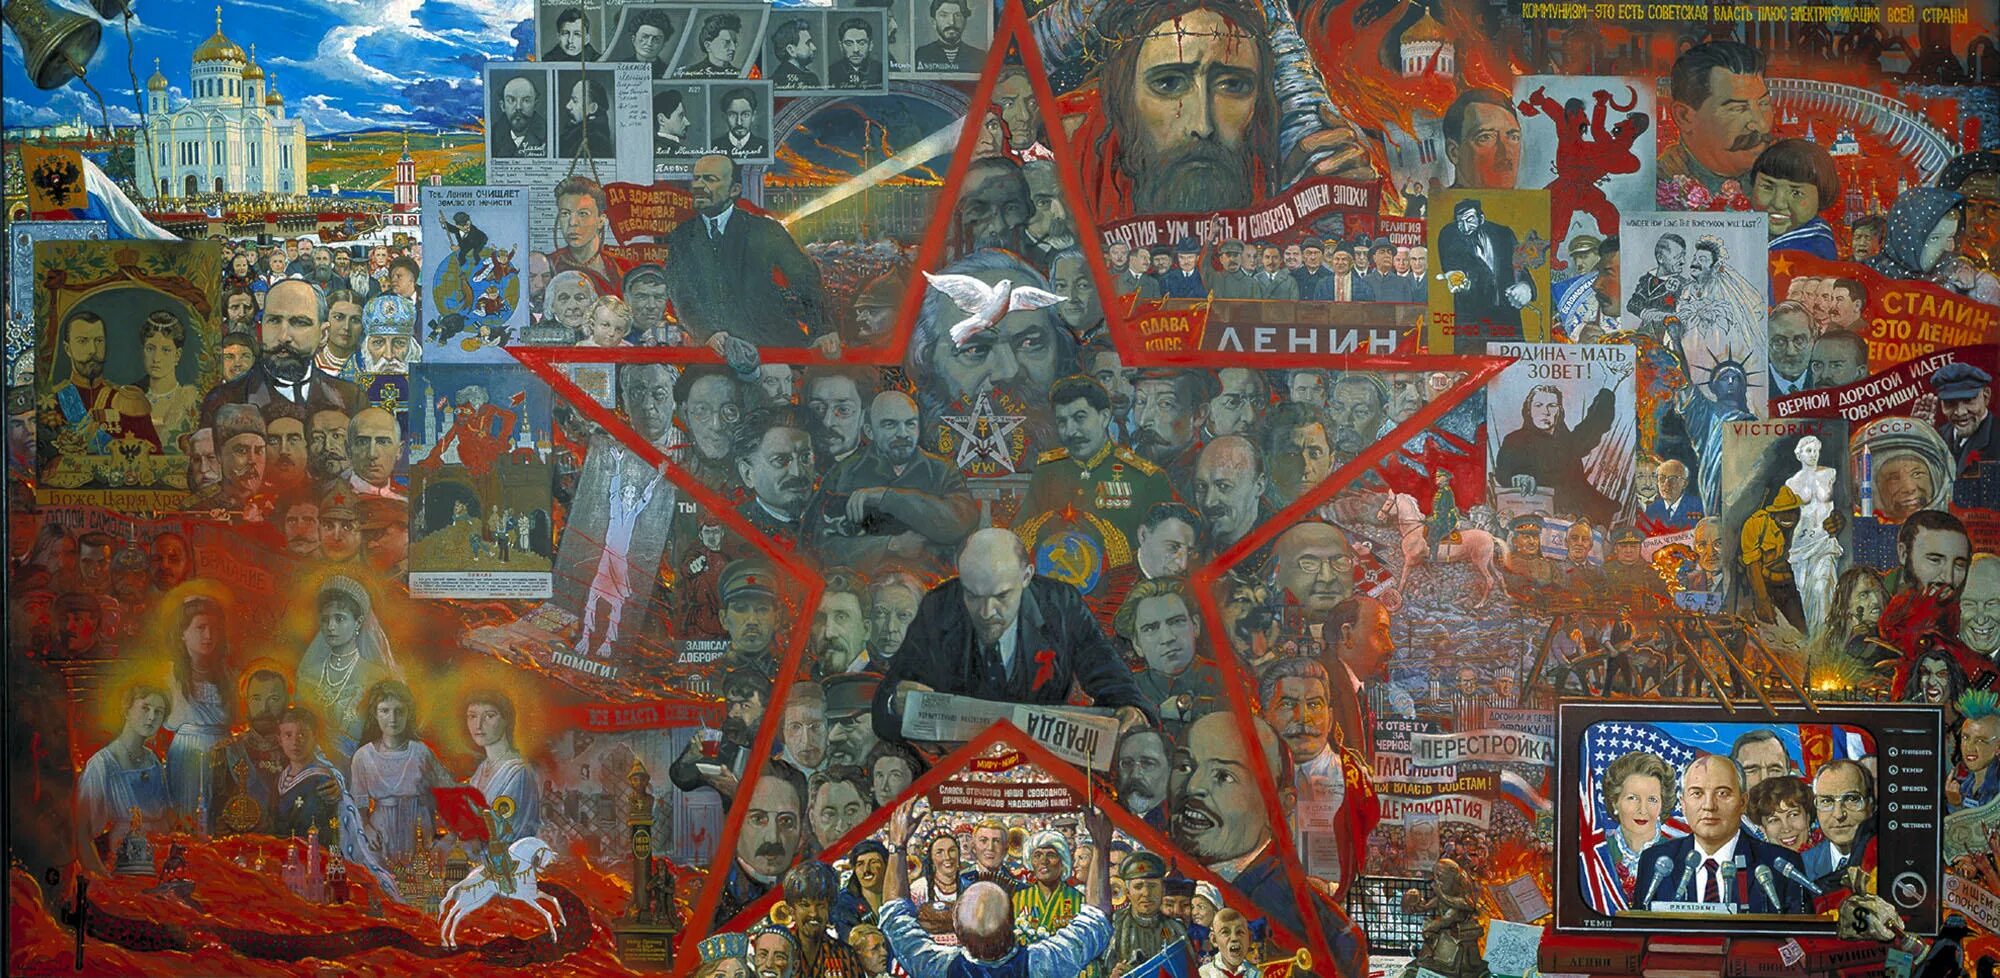 Xxi век истории. Мистерия 20 века Глазунов. Картина Великий эксперимент Глазунова.